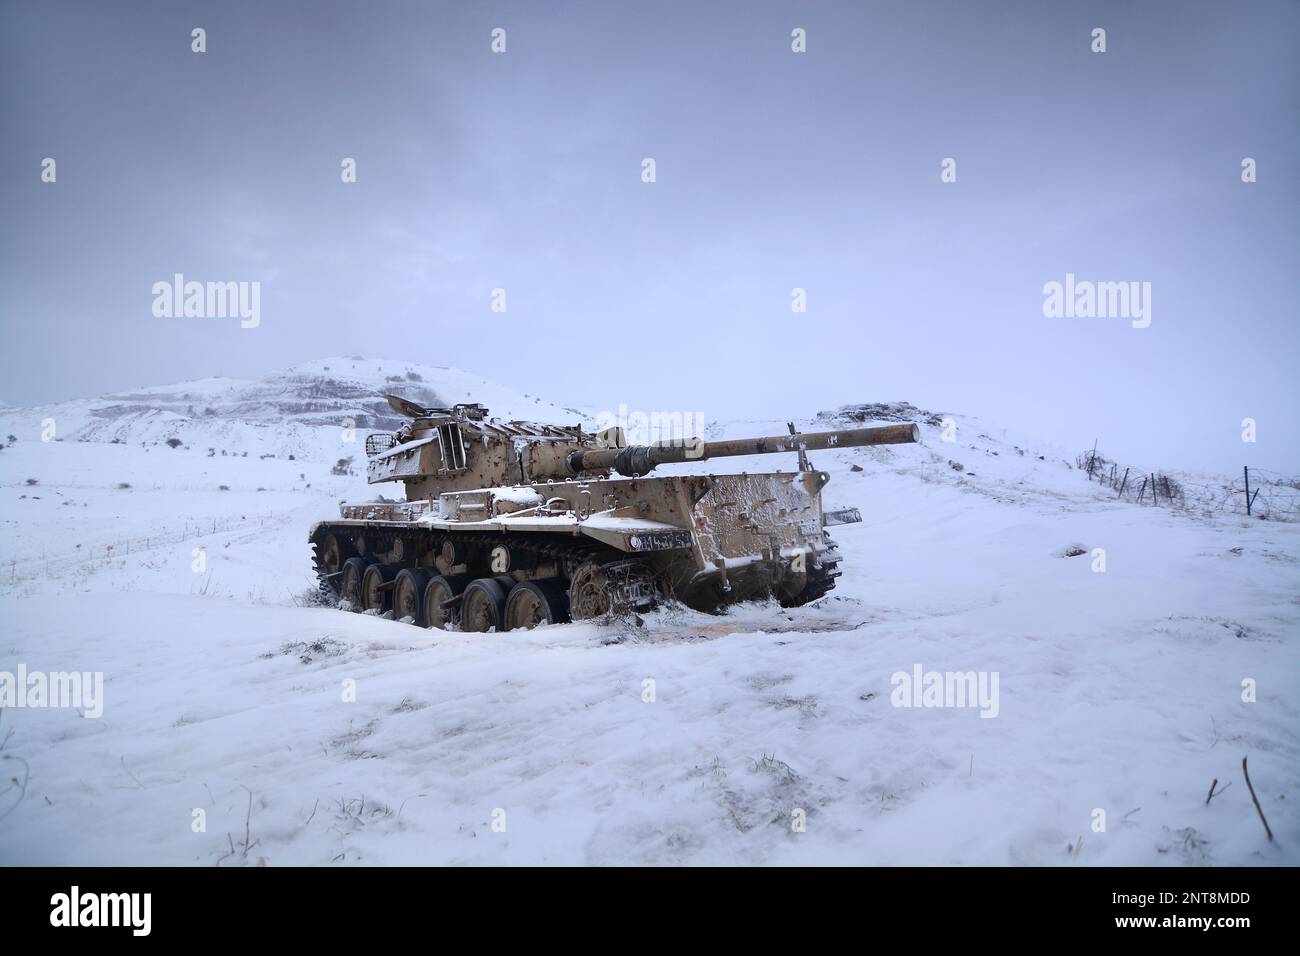 Un char abandonné à la frontière syrienne par une journée enneigée Banque D'Images